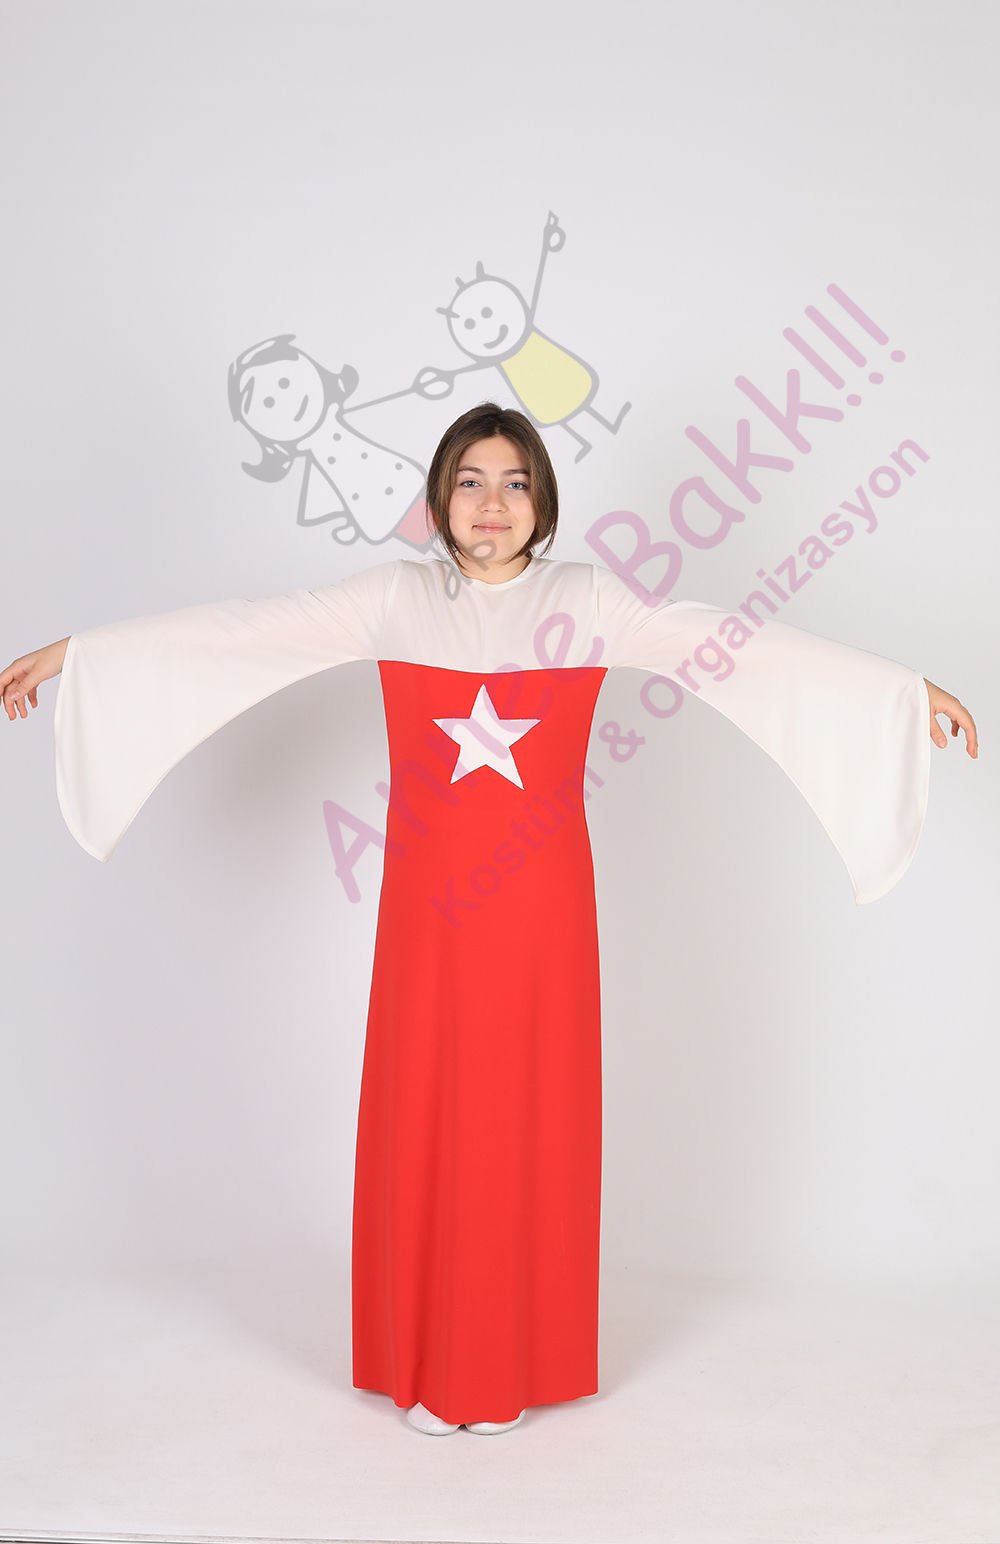 Türkiye Kız Çocuk Kostümü, Türk Bayrağı Temalı Gösteri ve Etkinlik Kostümü, Hızlı Teslimat